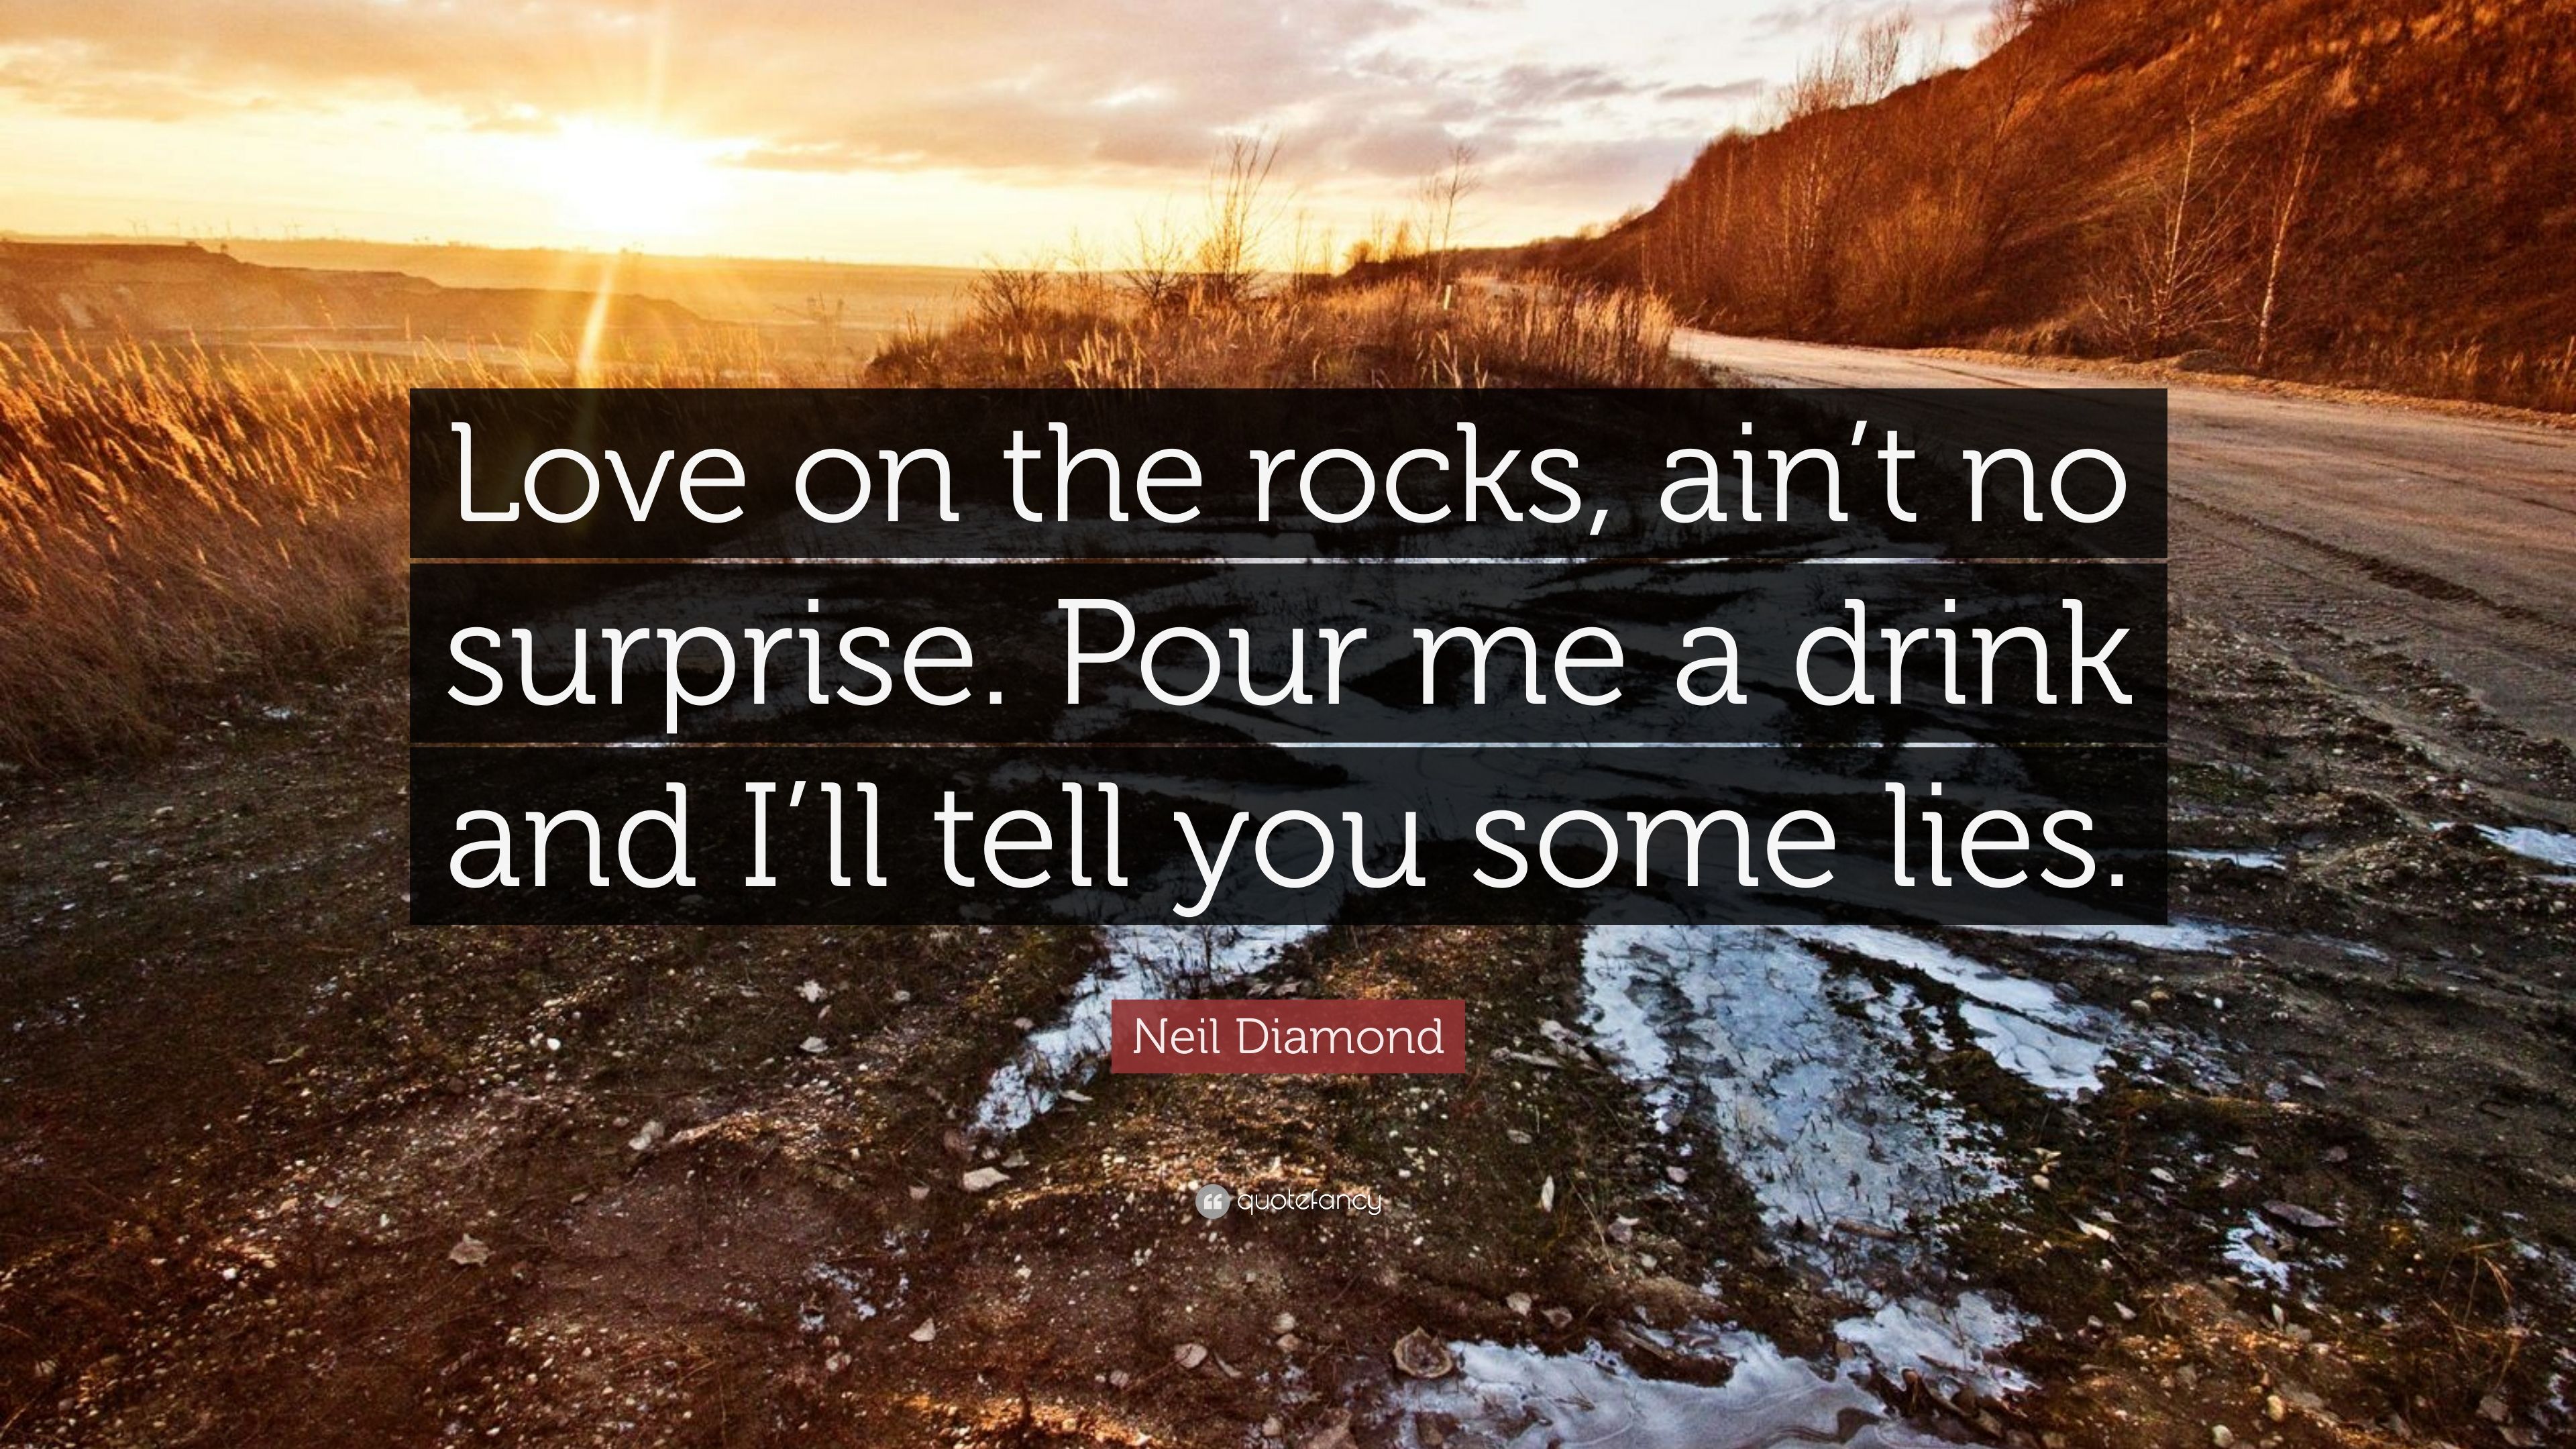 Neil Diamond Quote: “Love on the rocks, ain't no surprise. Pour me